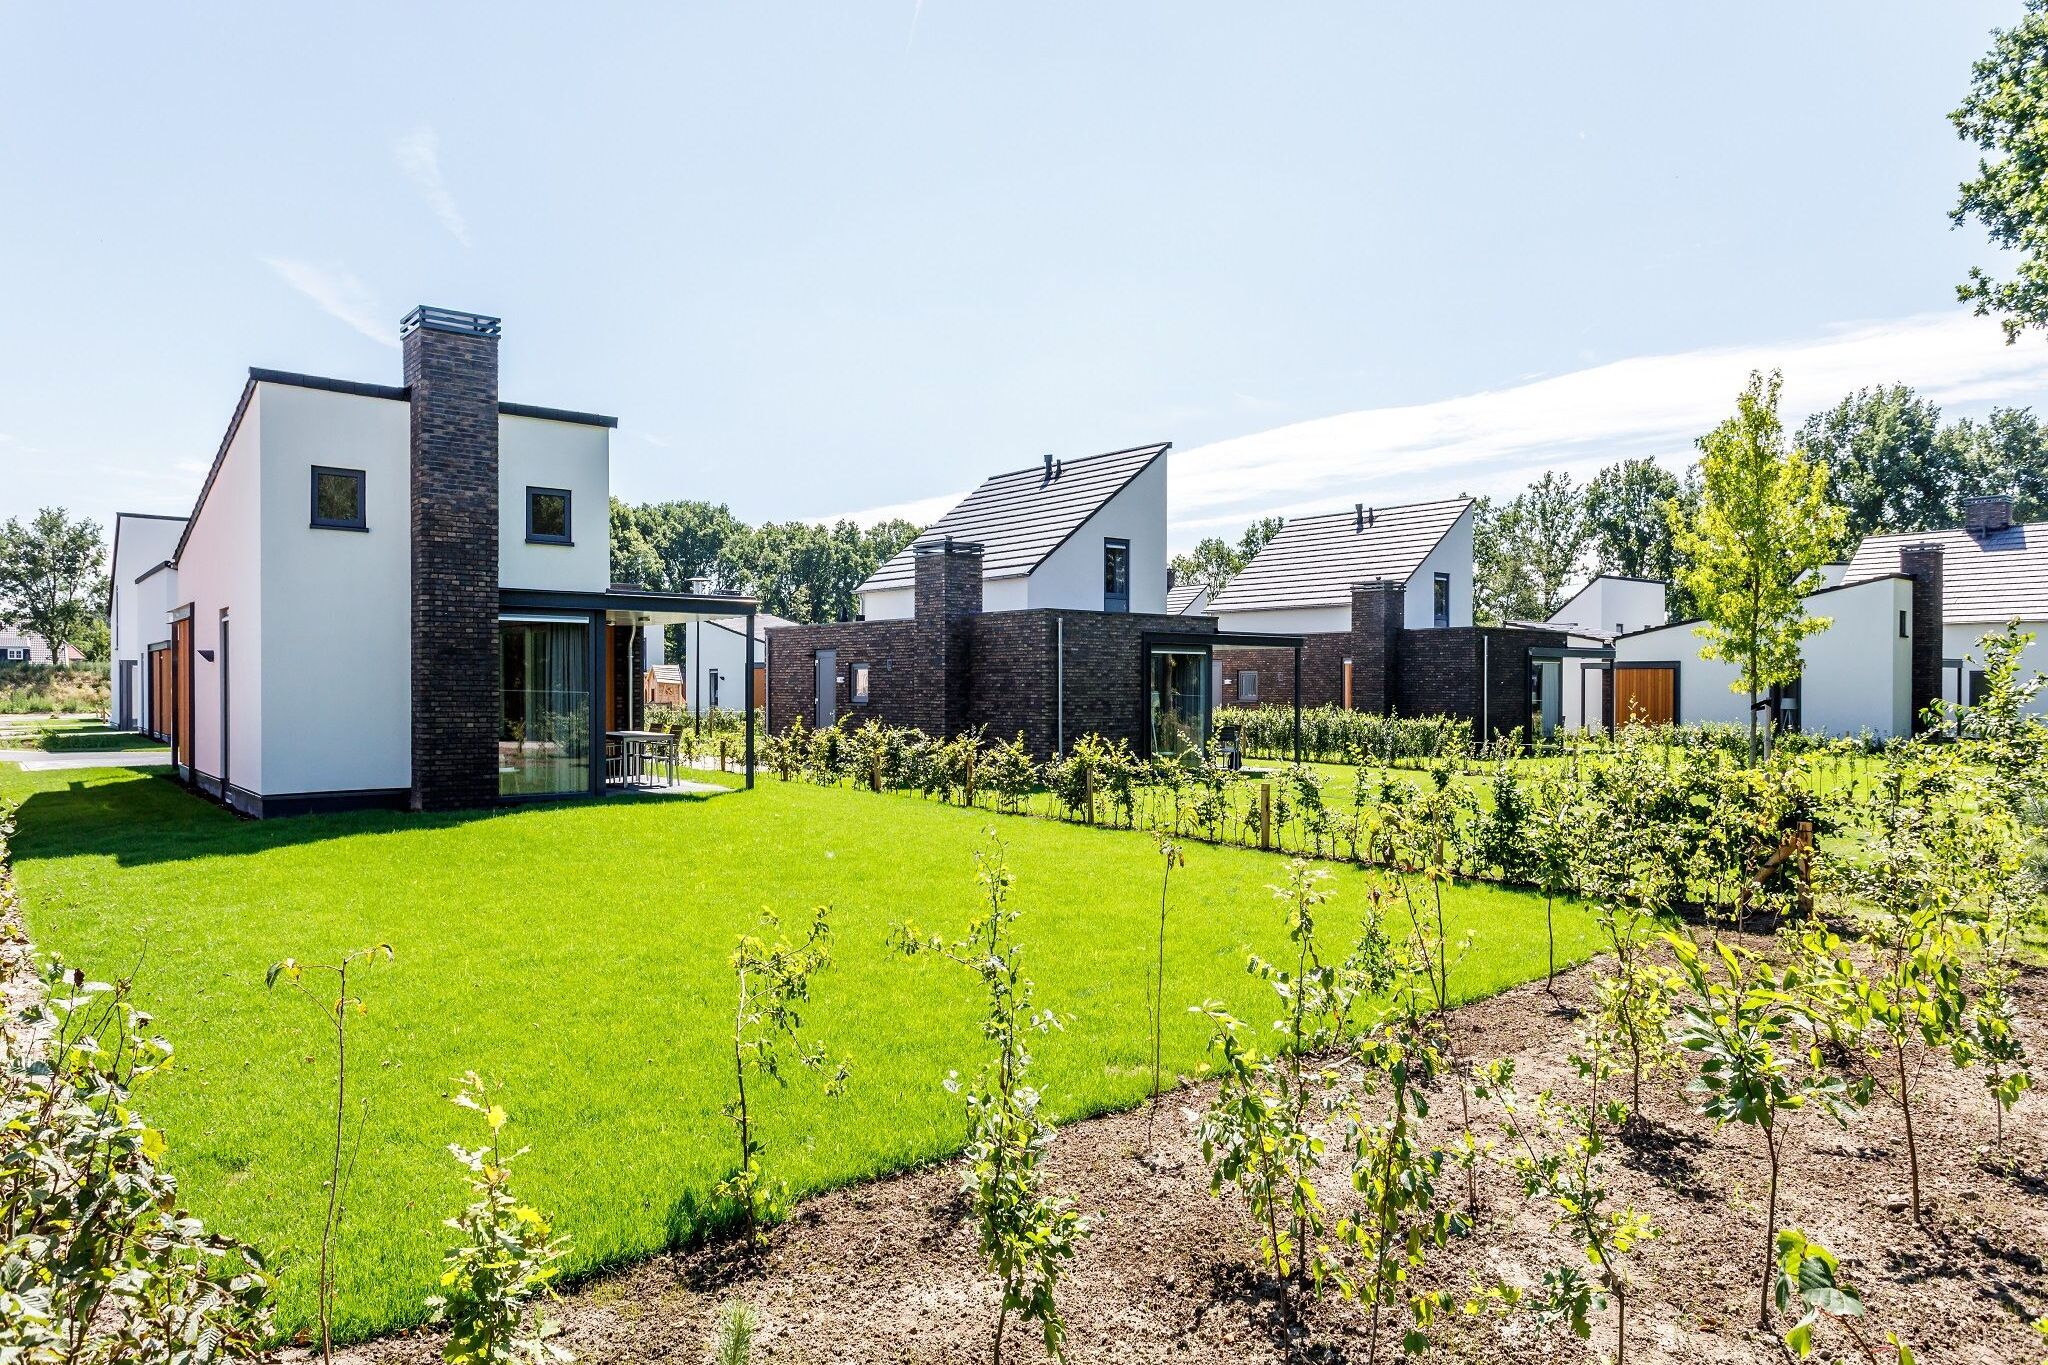 Villa mit einer überdachten Terrasse in Limburg